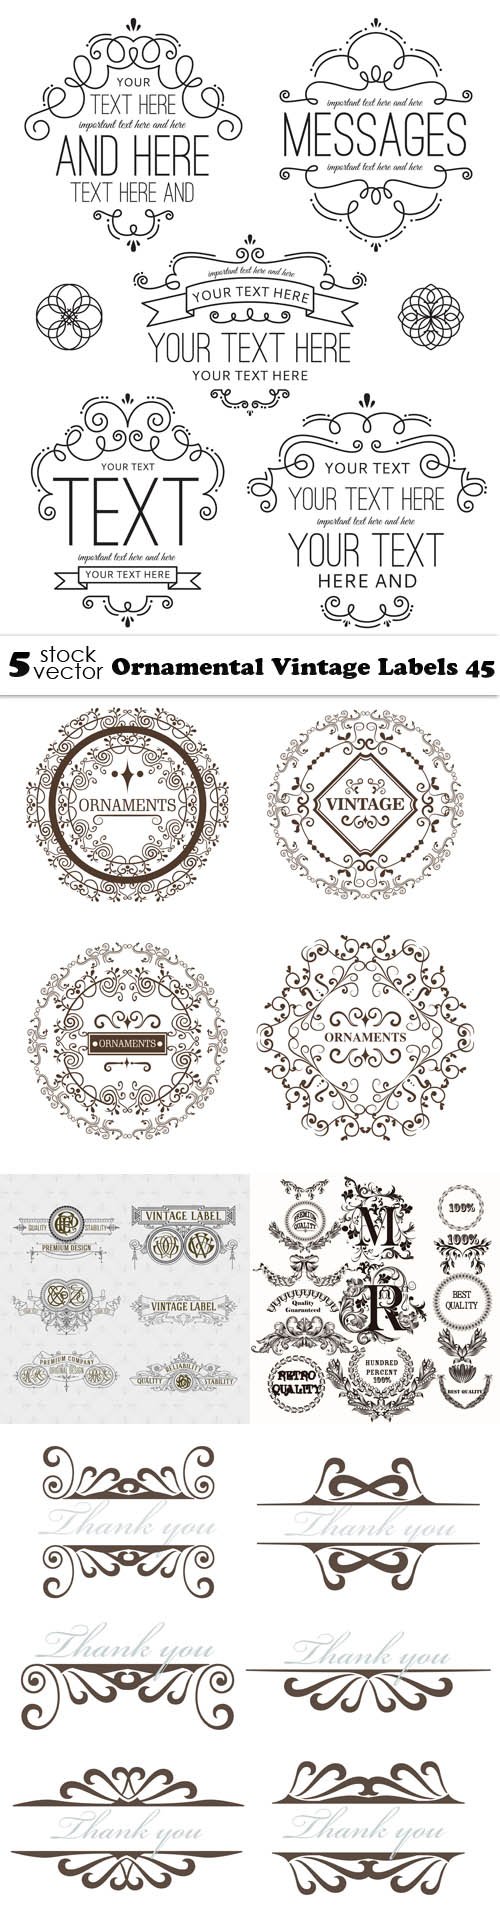 Vectors - Ornamental Vintage Labels 45